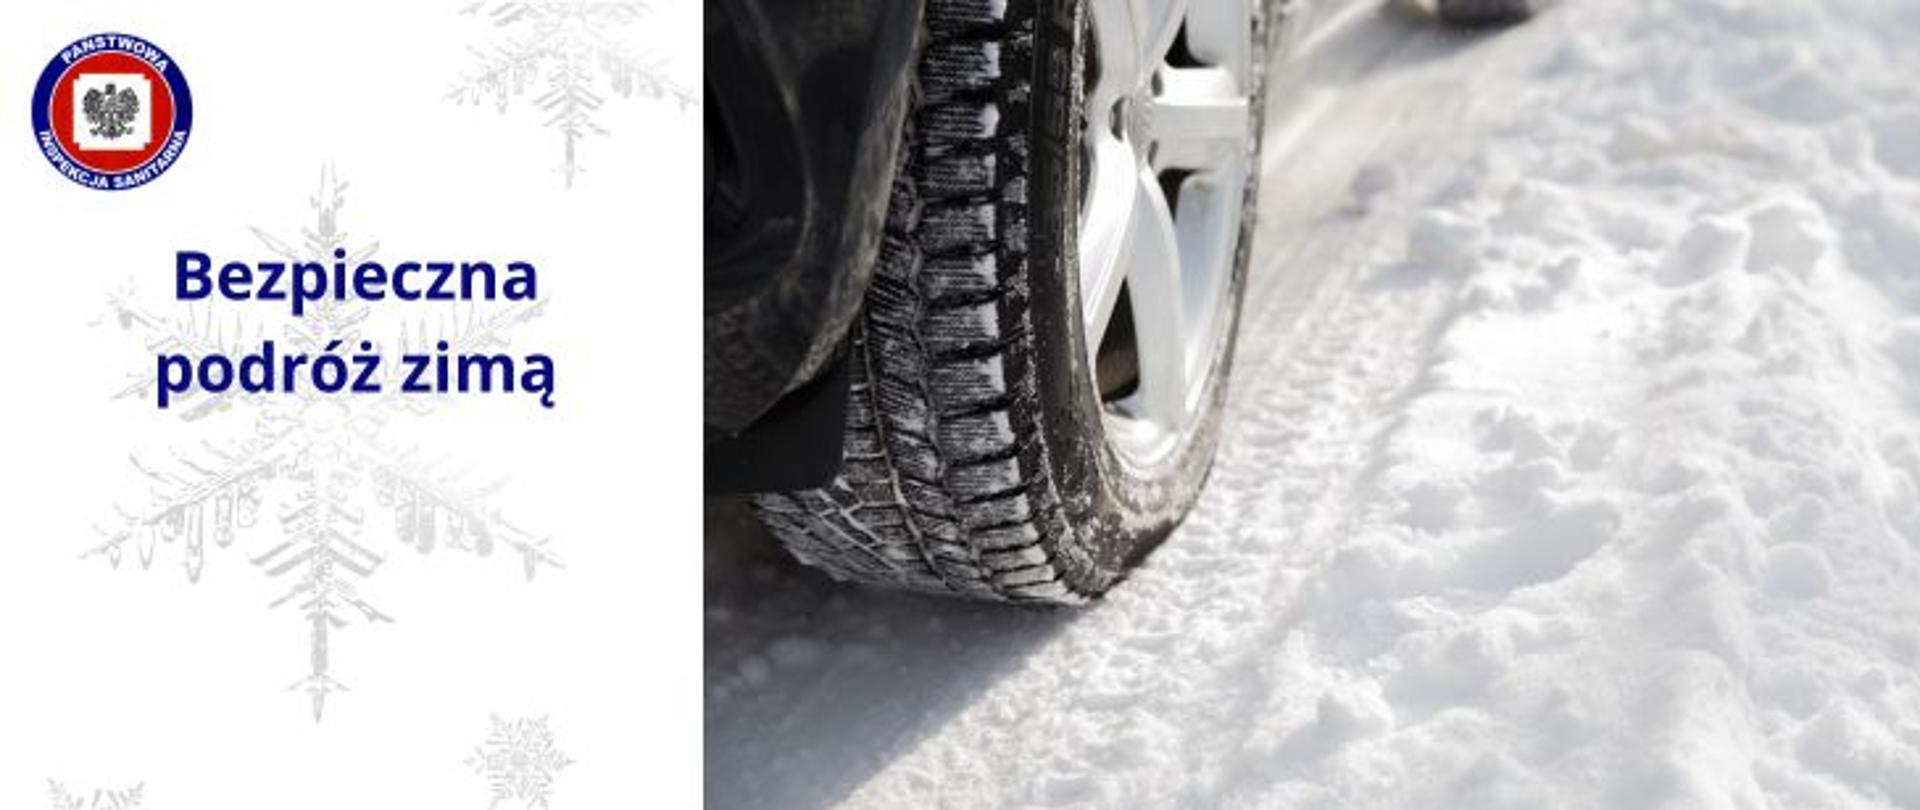 Z prawej strony zdjęcie prawego tylnego koła na ośnieżonej drodze, z lewej na białym tle różnej wielkości śnieżynki i granatowy napis "Bezpieczna podróż zimą" a powyżej w lewym górnym rogu logo Państwowej Inspekcji Sanitarnej.